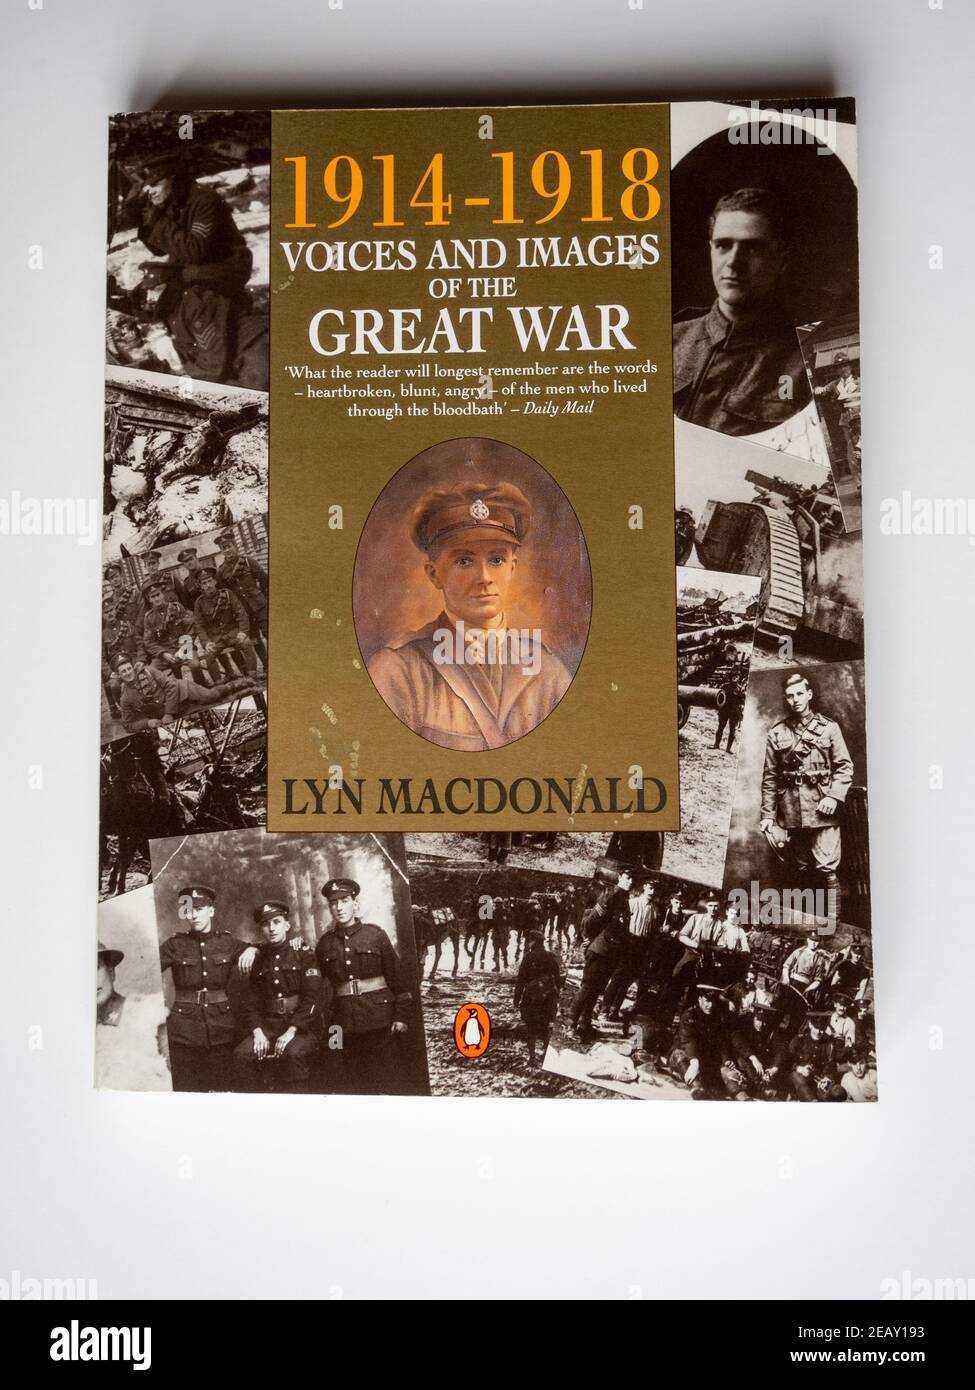 Foto d'inventario del libro 1914-1918 voci e immagini della Grande Guerra, dell'autore e storico Lyn Macdonald; Penguin Books, 1991 Foto Stock